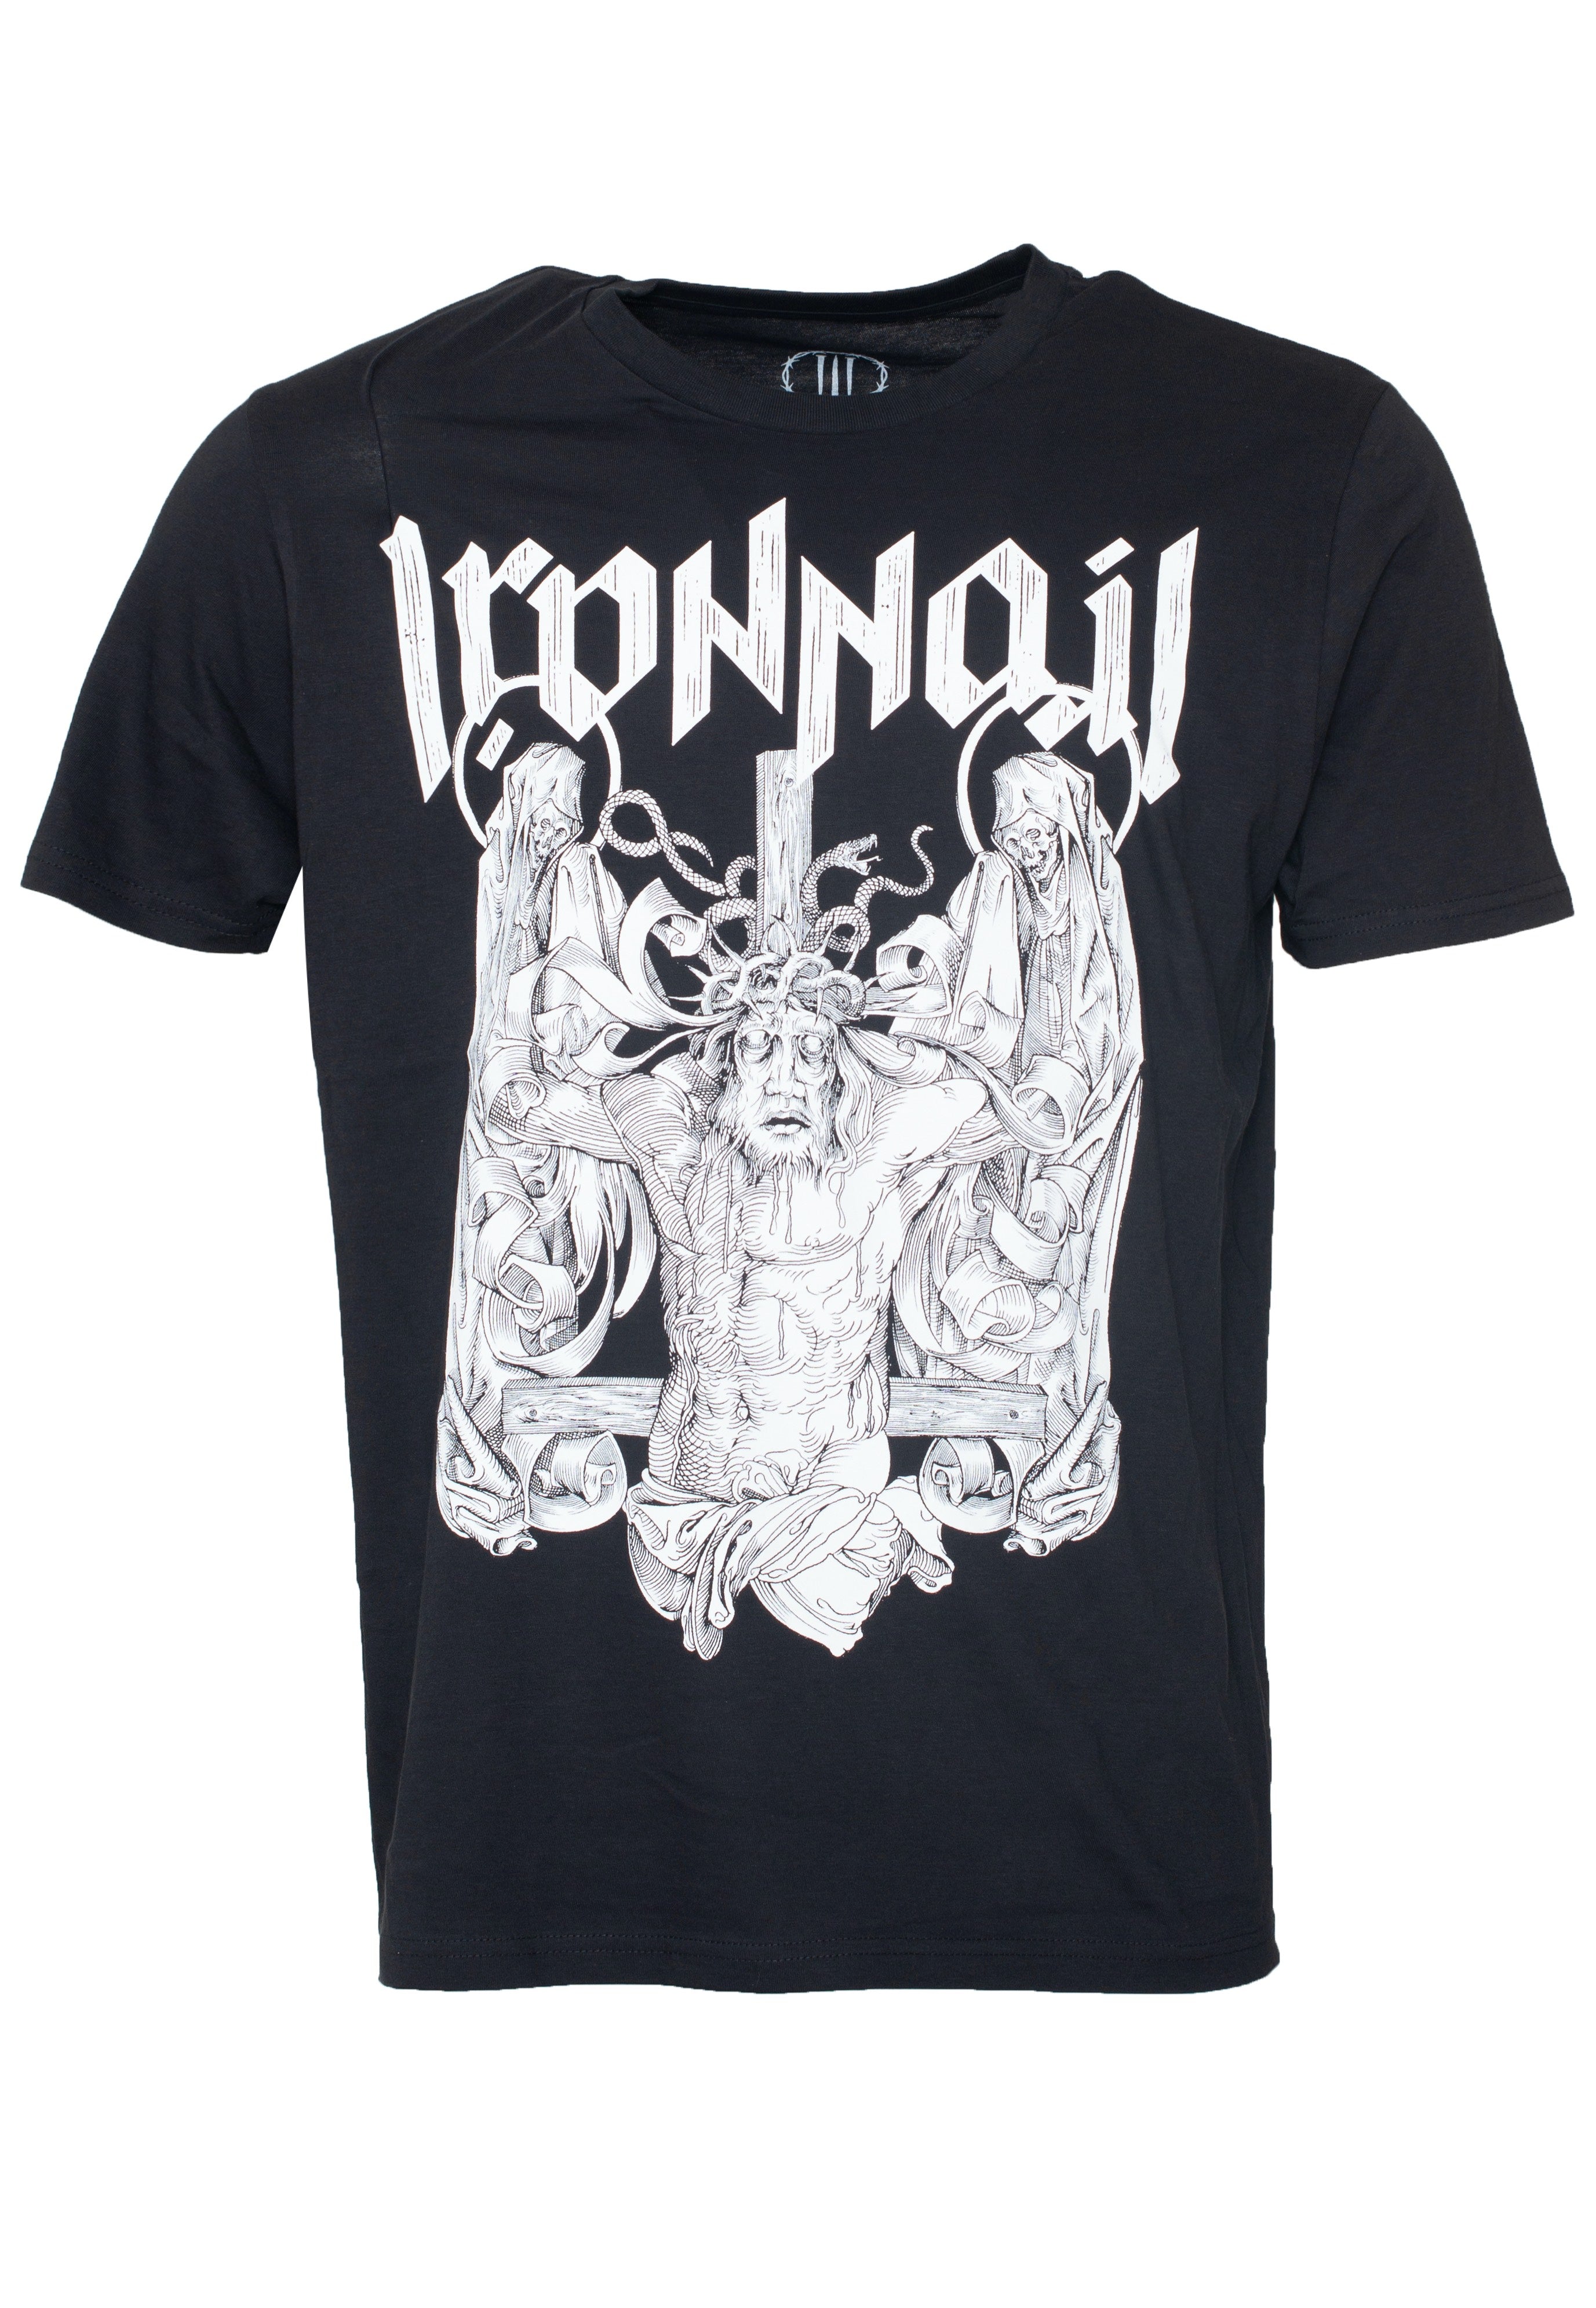 Ironnail - Pavlov - T-Shirt